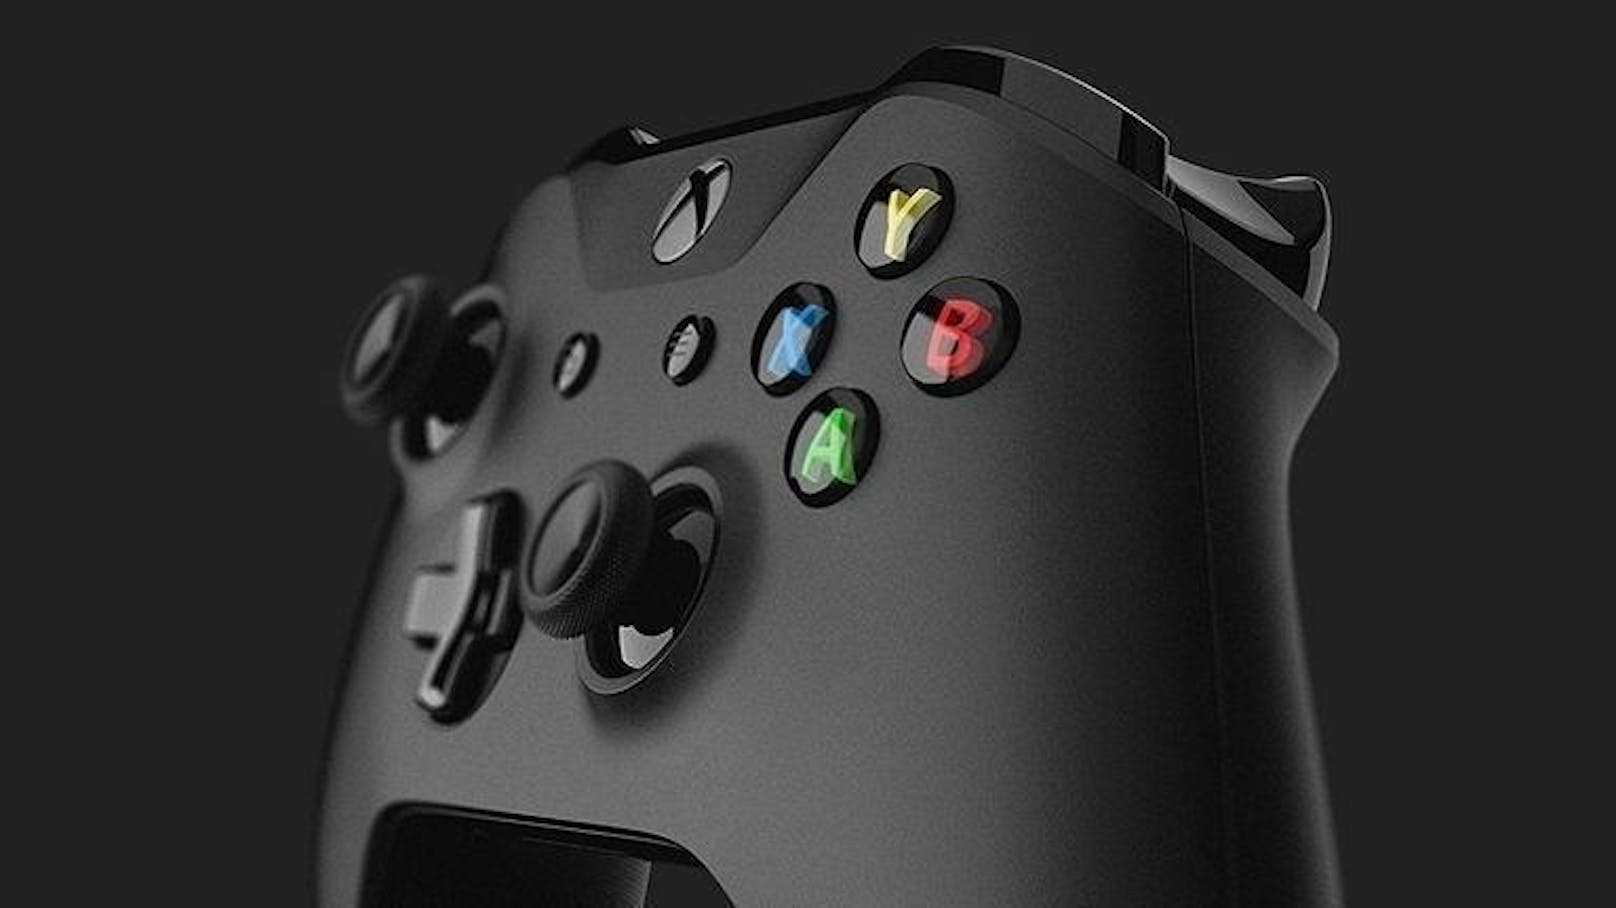 Die Xbox One X verfügt über eine Acht-Kern-x64-CPU mit 2,3 GHz Taktfrequenz. Die Xbox One nutzt eine Acht-Kern-Jaguar-CPU mit 1,75 GHz. Die neuen x86-CPU-Kerne sollen 31 Prozent schneller sein und deutlich mehr Spielraum für individuelle Einstellungen erlauben.